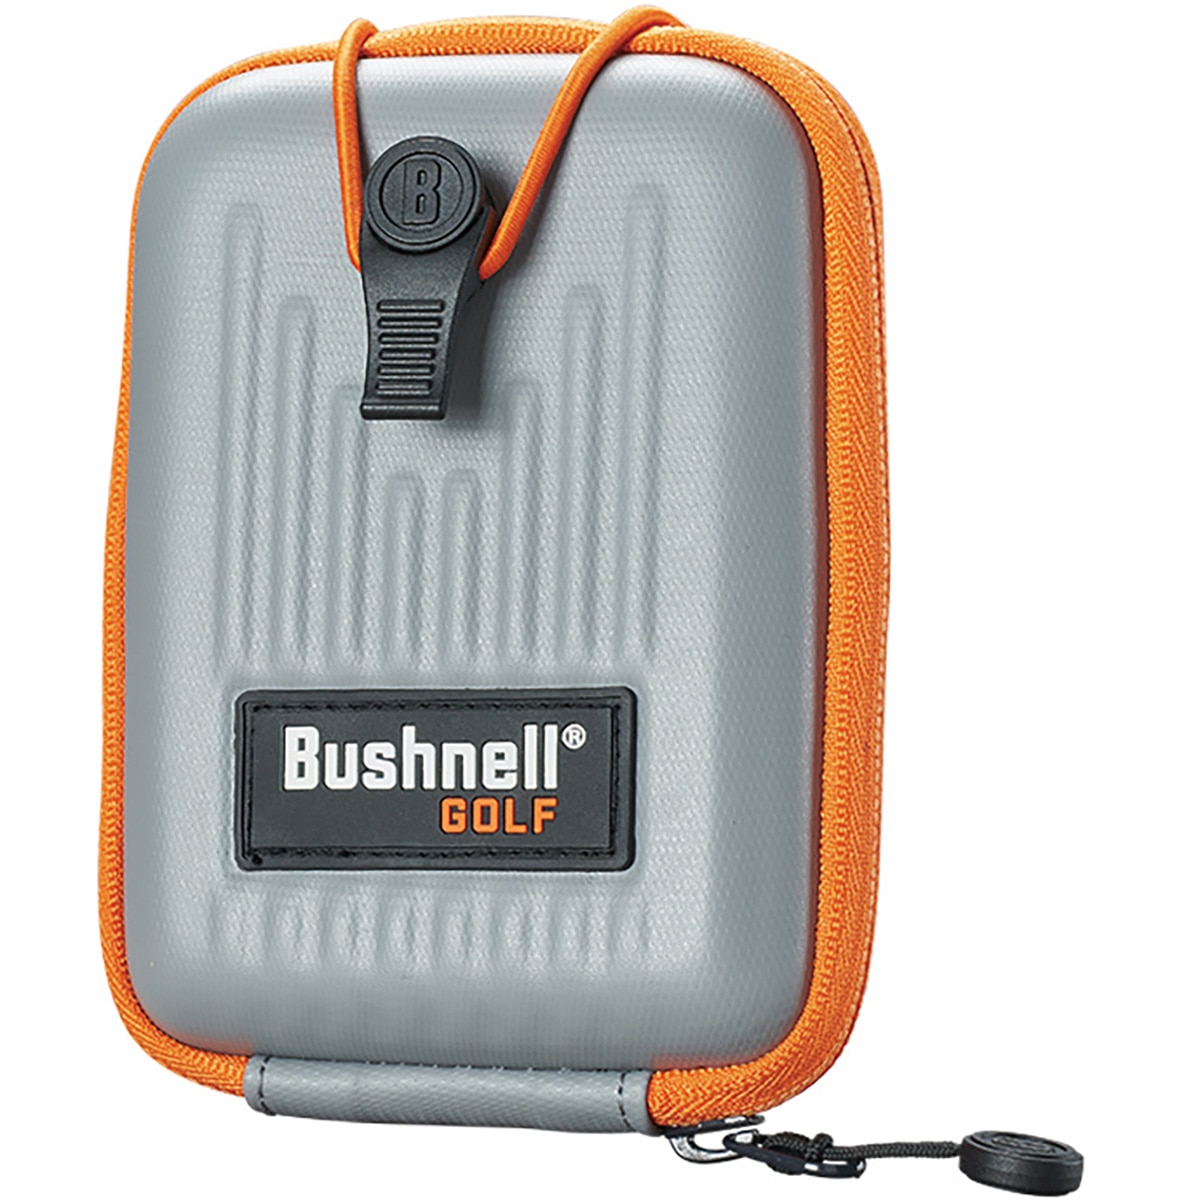 ピンシーカーツアーV6シフトジョルト(距離測定器)|Bushnell(ブッシュ